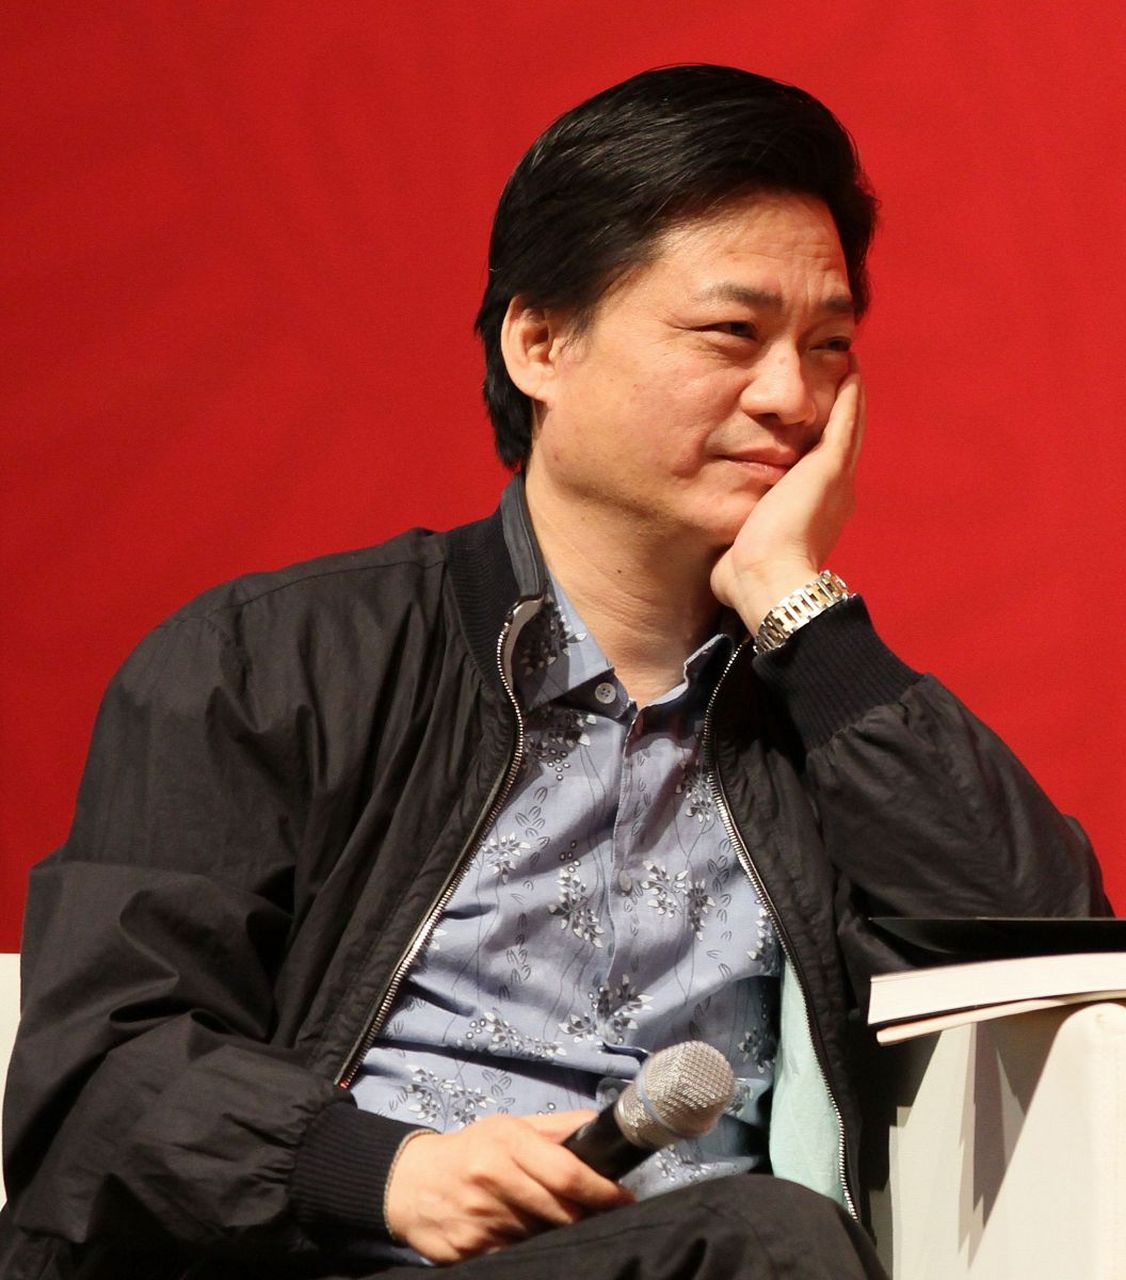 崔永元,直言不讳的电视节目主持!曾遭争议,微博受限但从未被封禁